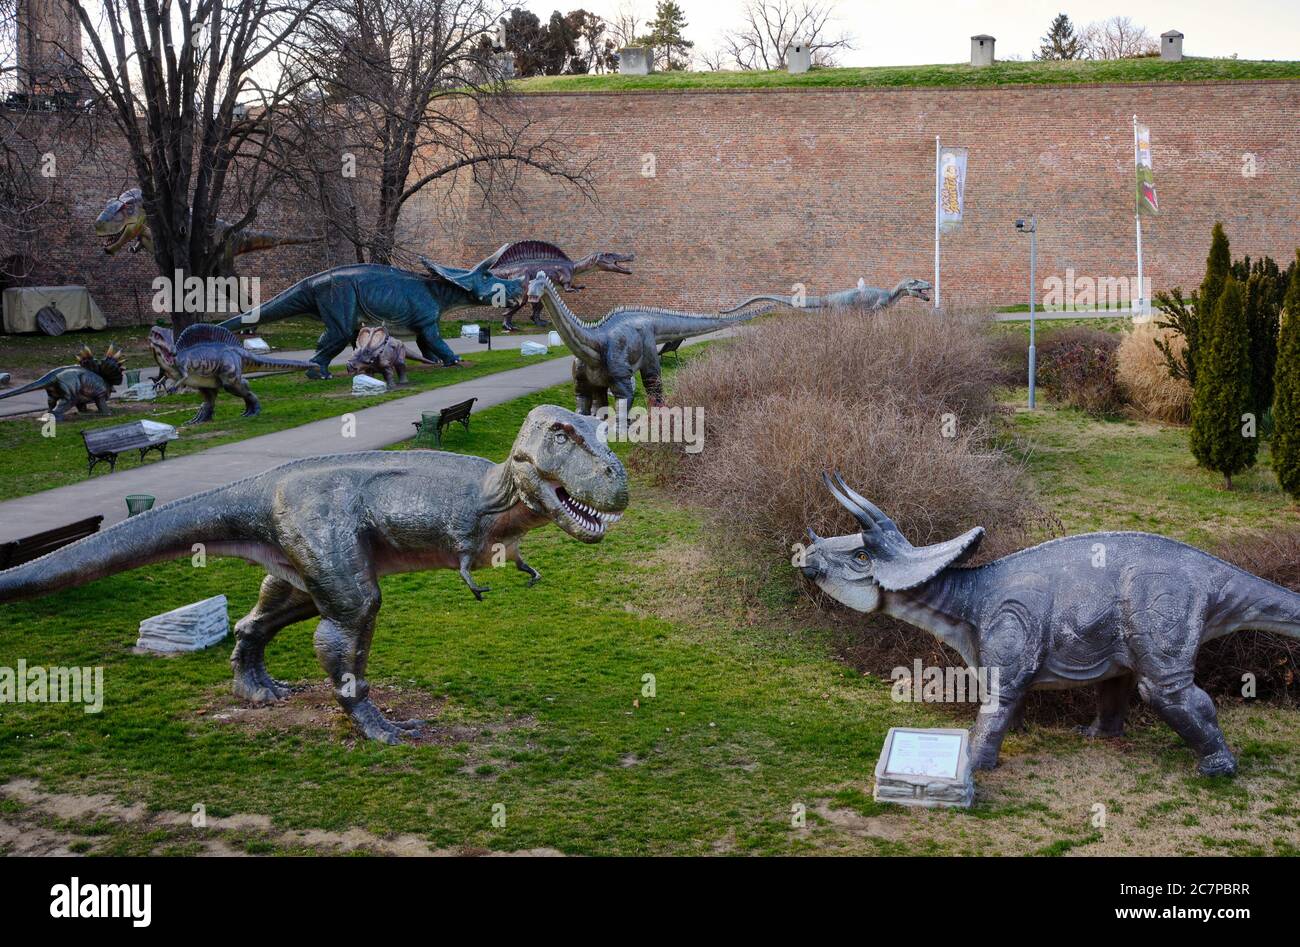 Belgrade / Serbie - 22 février 2020 : Parc à thème Jurassic Adventure dinosaures à Belgrade Forteresse Parc Kalemegdan à Belgrade, Serbie Banque D'Images